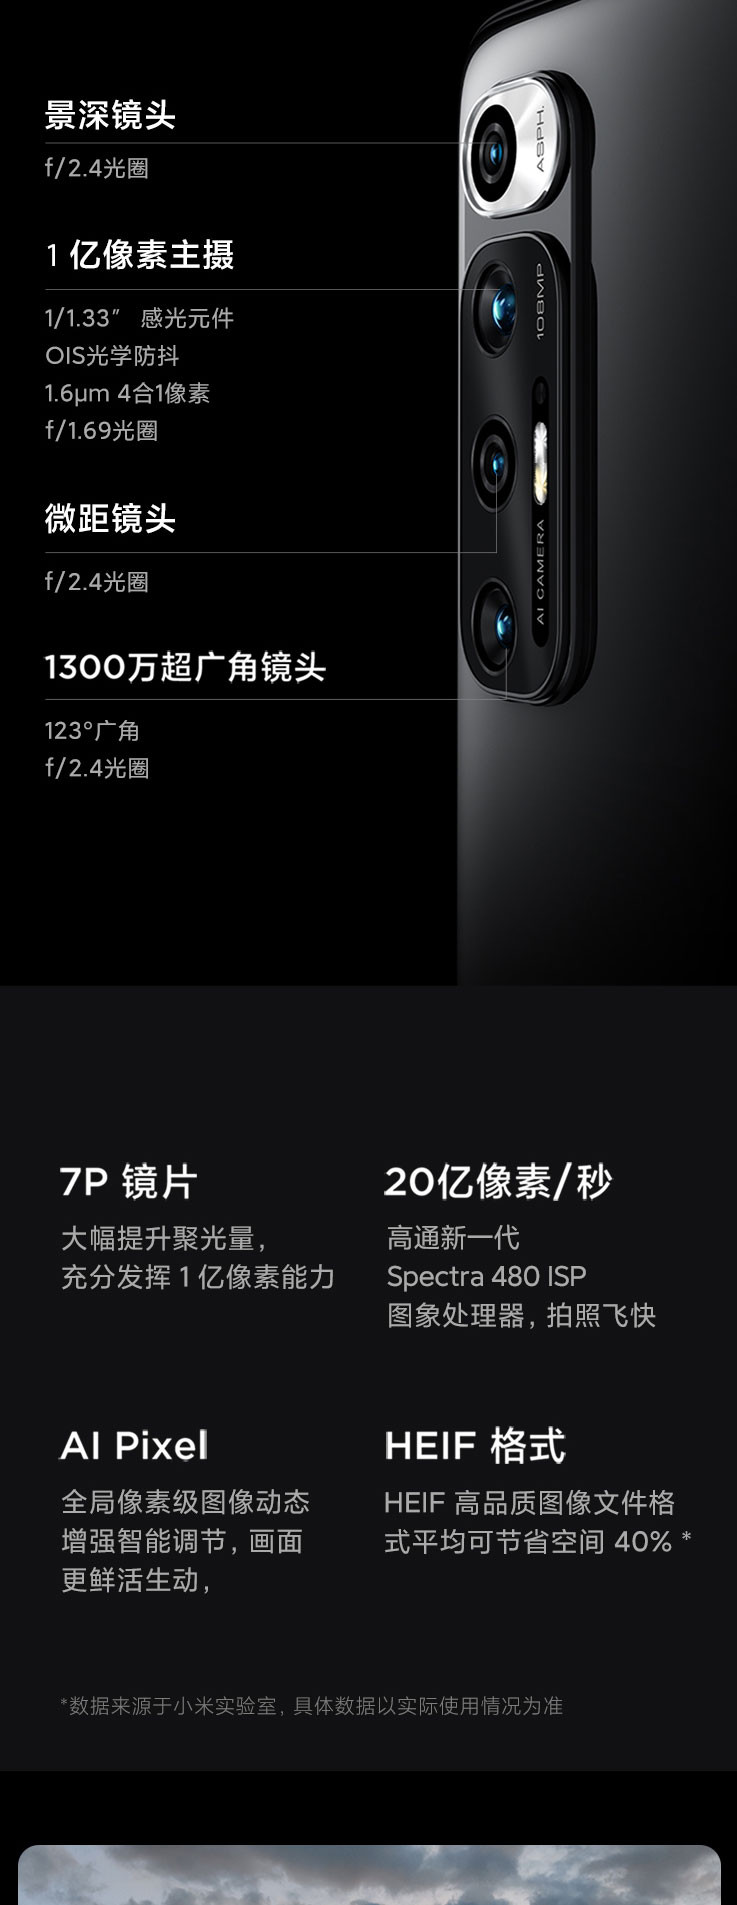 小米/MIUI 10S 骁龙870 5G手机 全网通 套装版